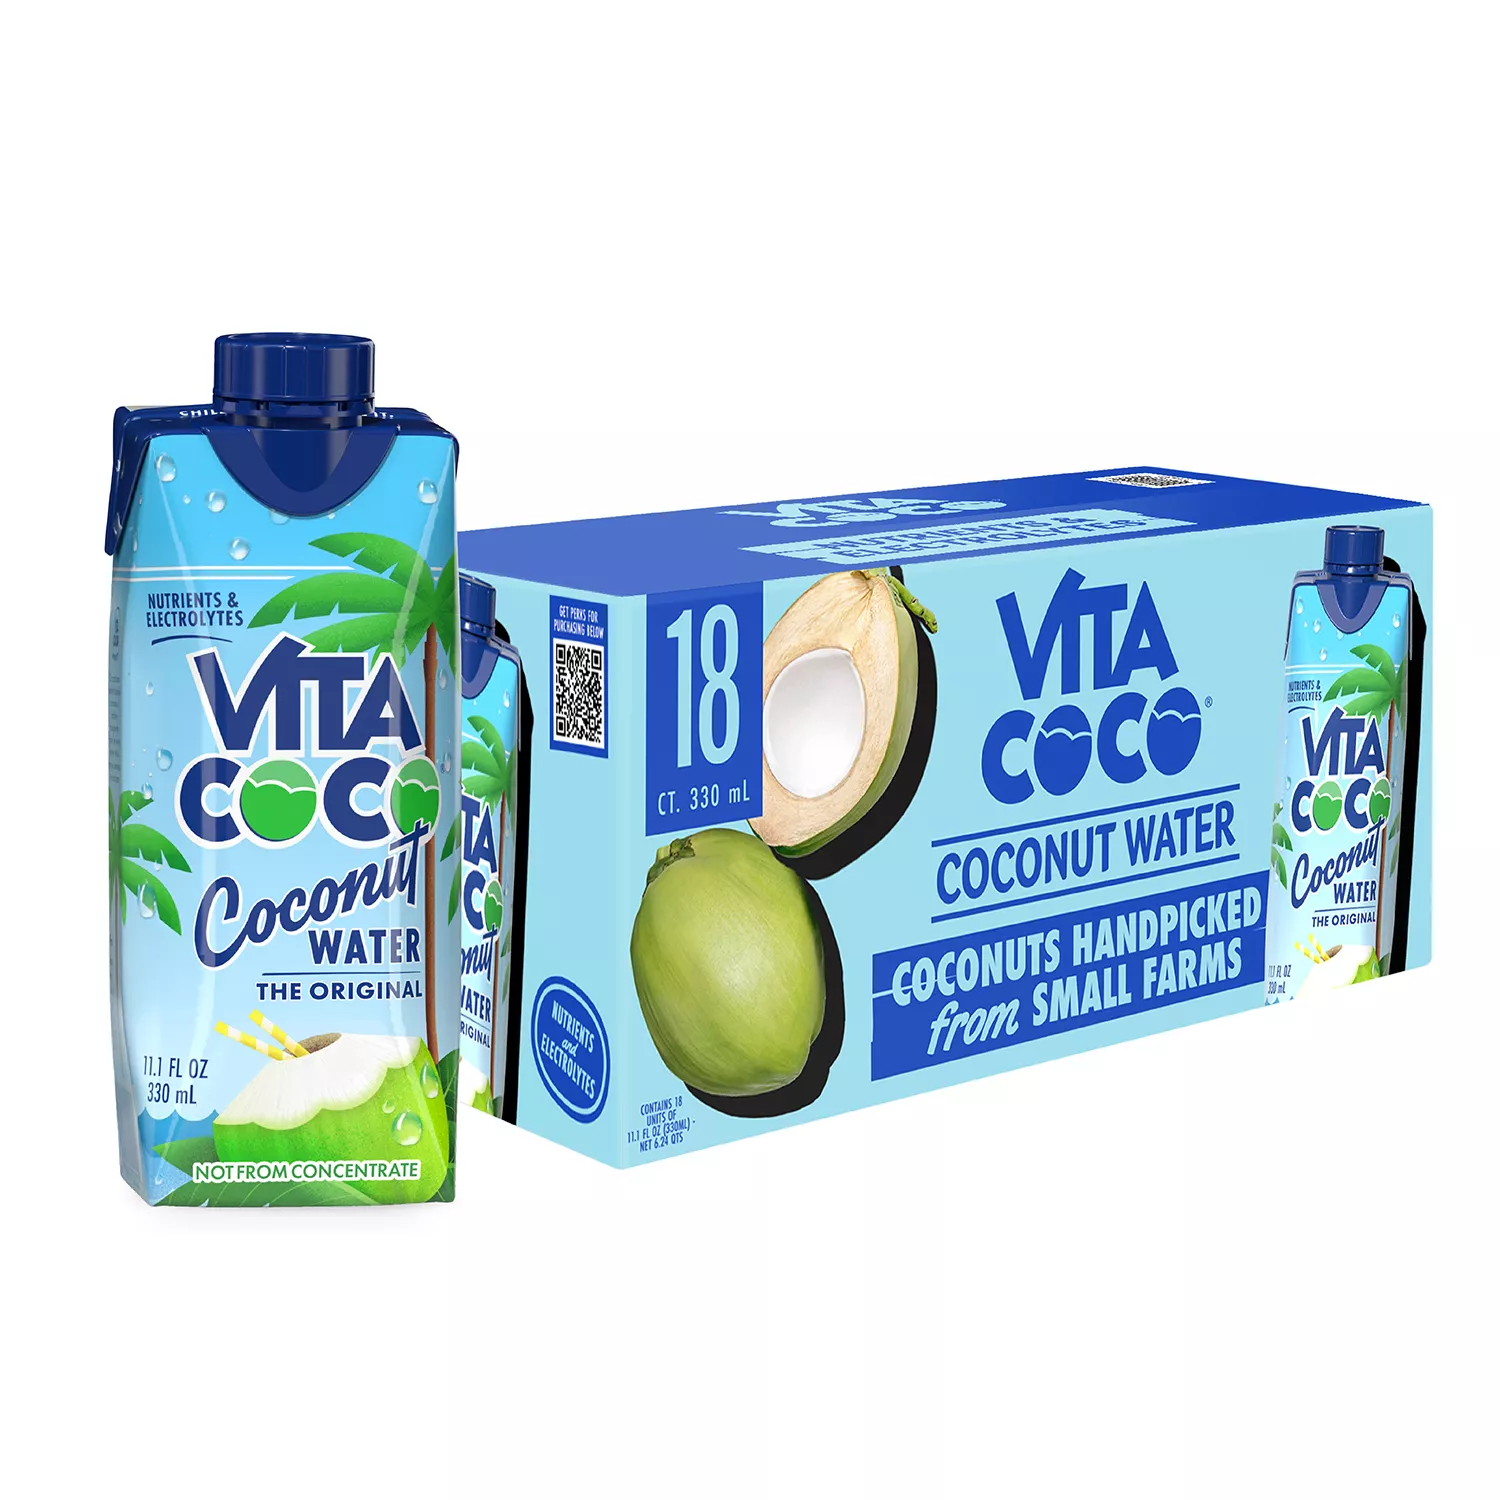 Vita Coco Coconut Water 11.1 fl. oz., 18 pk.